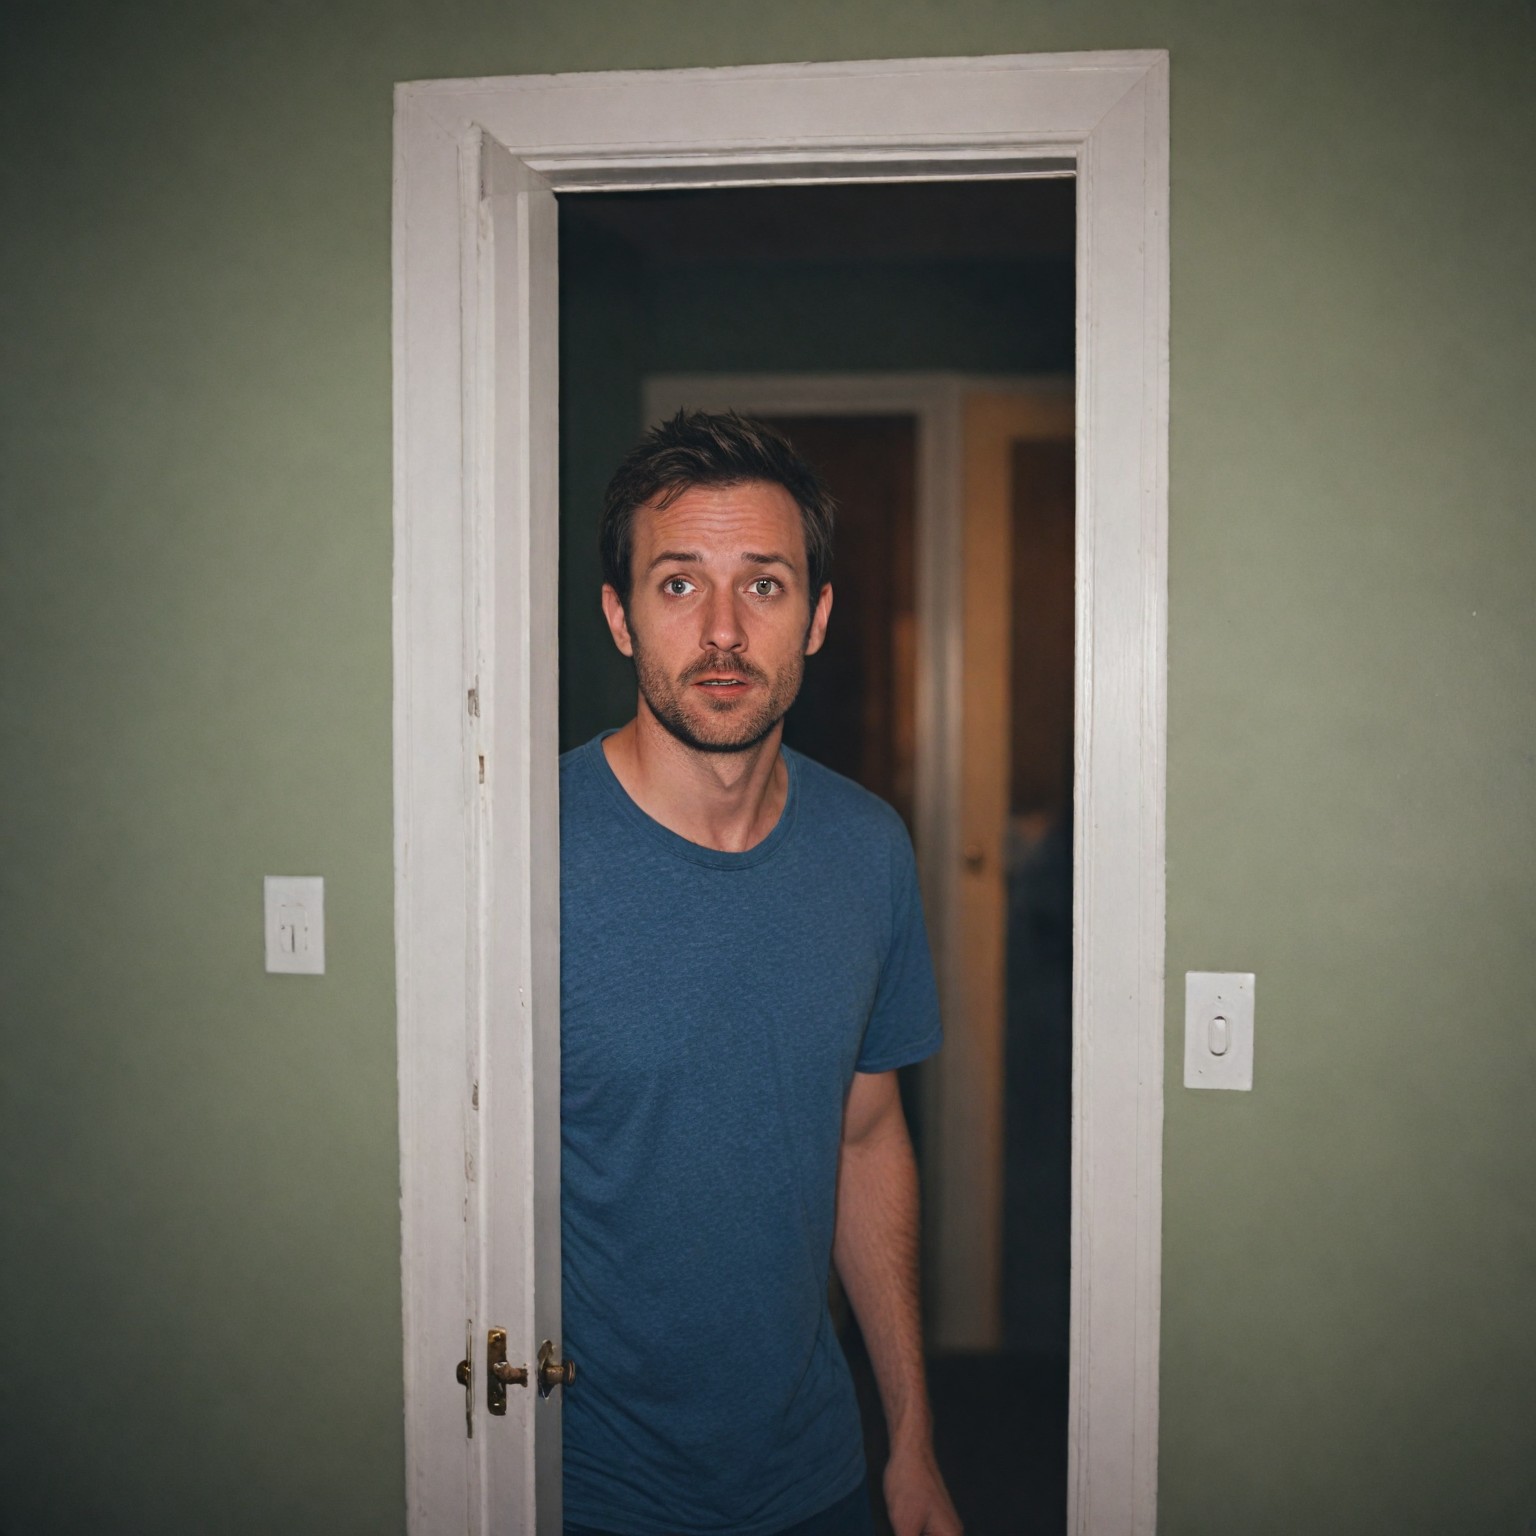 John standing in the bedroom doorway, with a look of shock and disbelief | Source: Midjourney